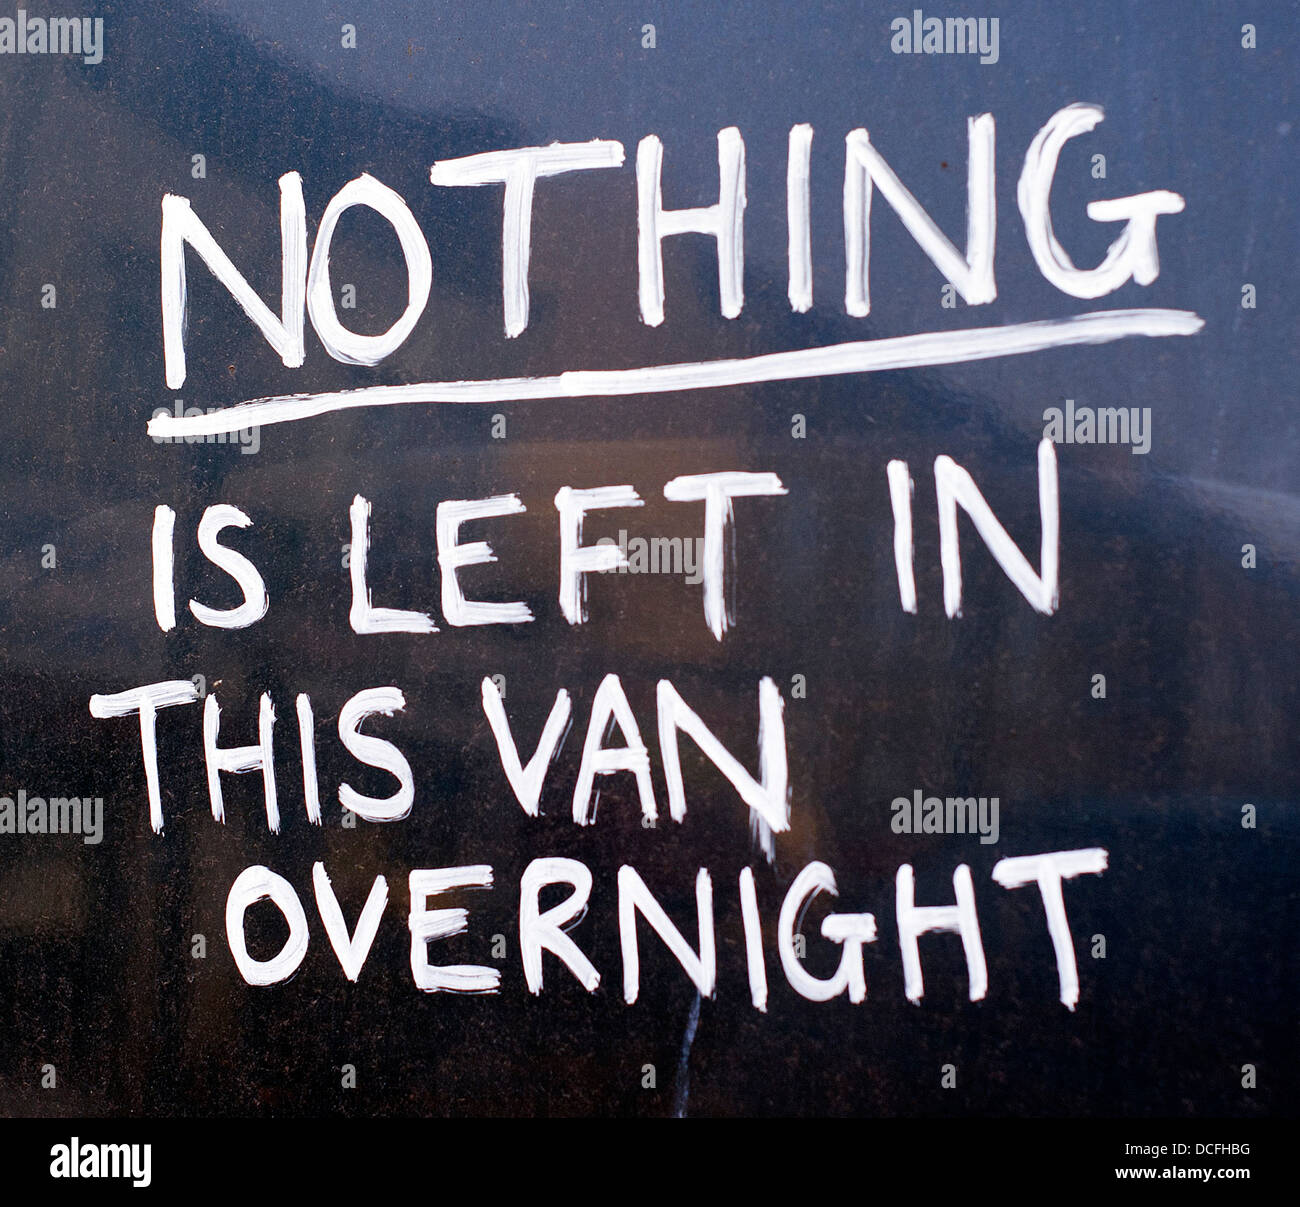 Schreiben um Diebe abzuschrecken ist auf eine van-Tür in Südlondon abgebildet. Stockfoto